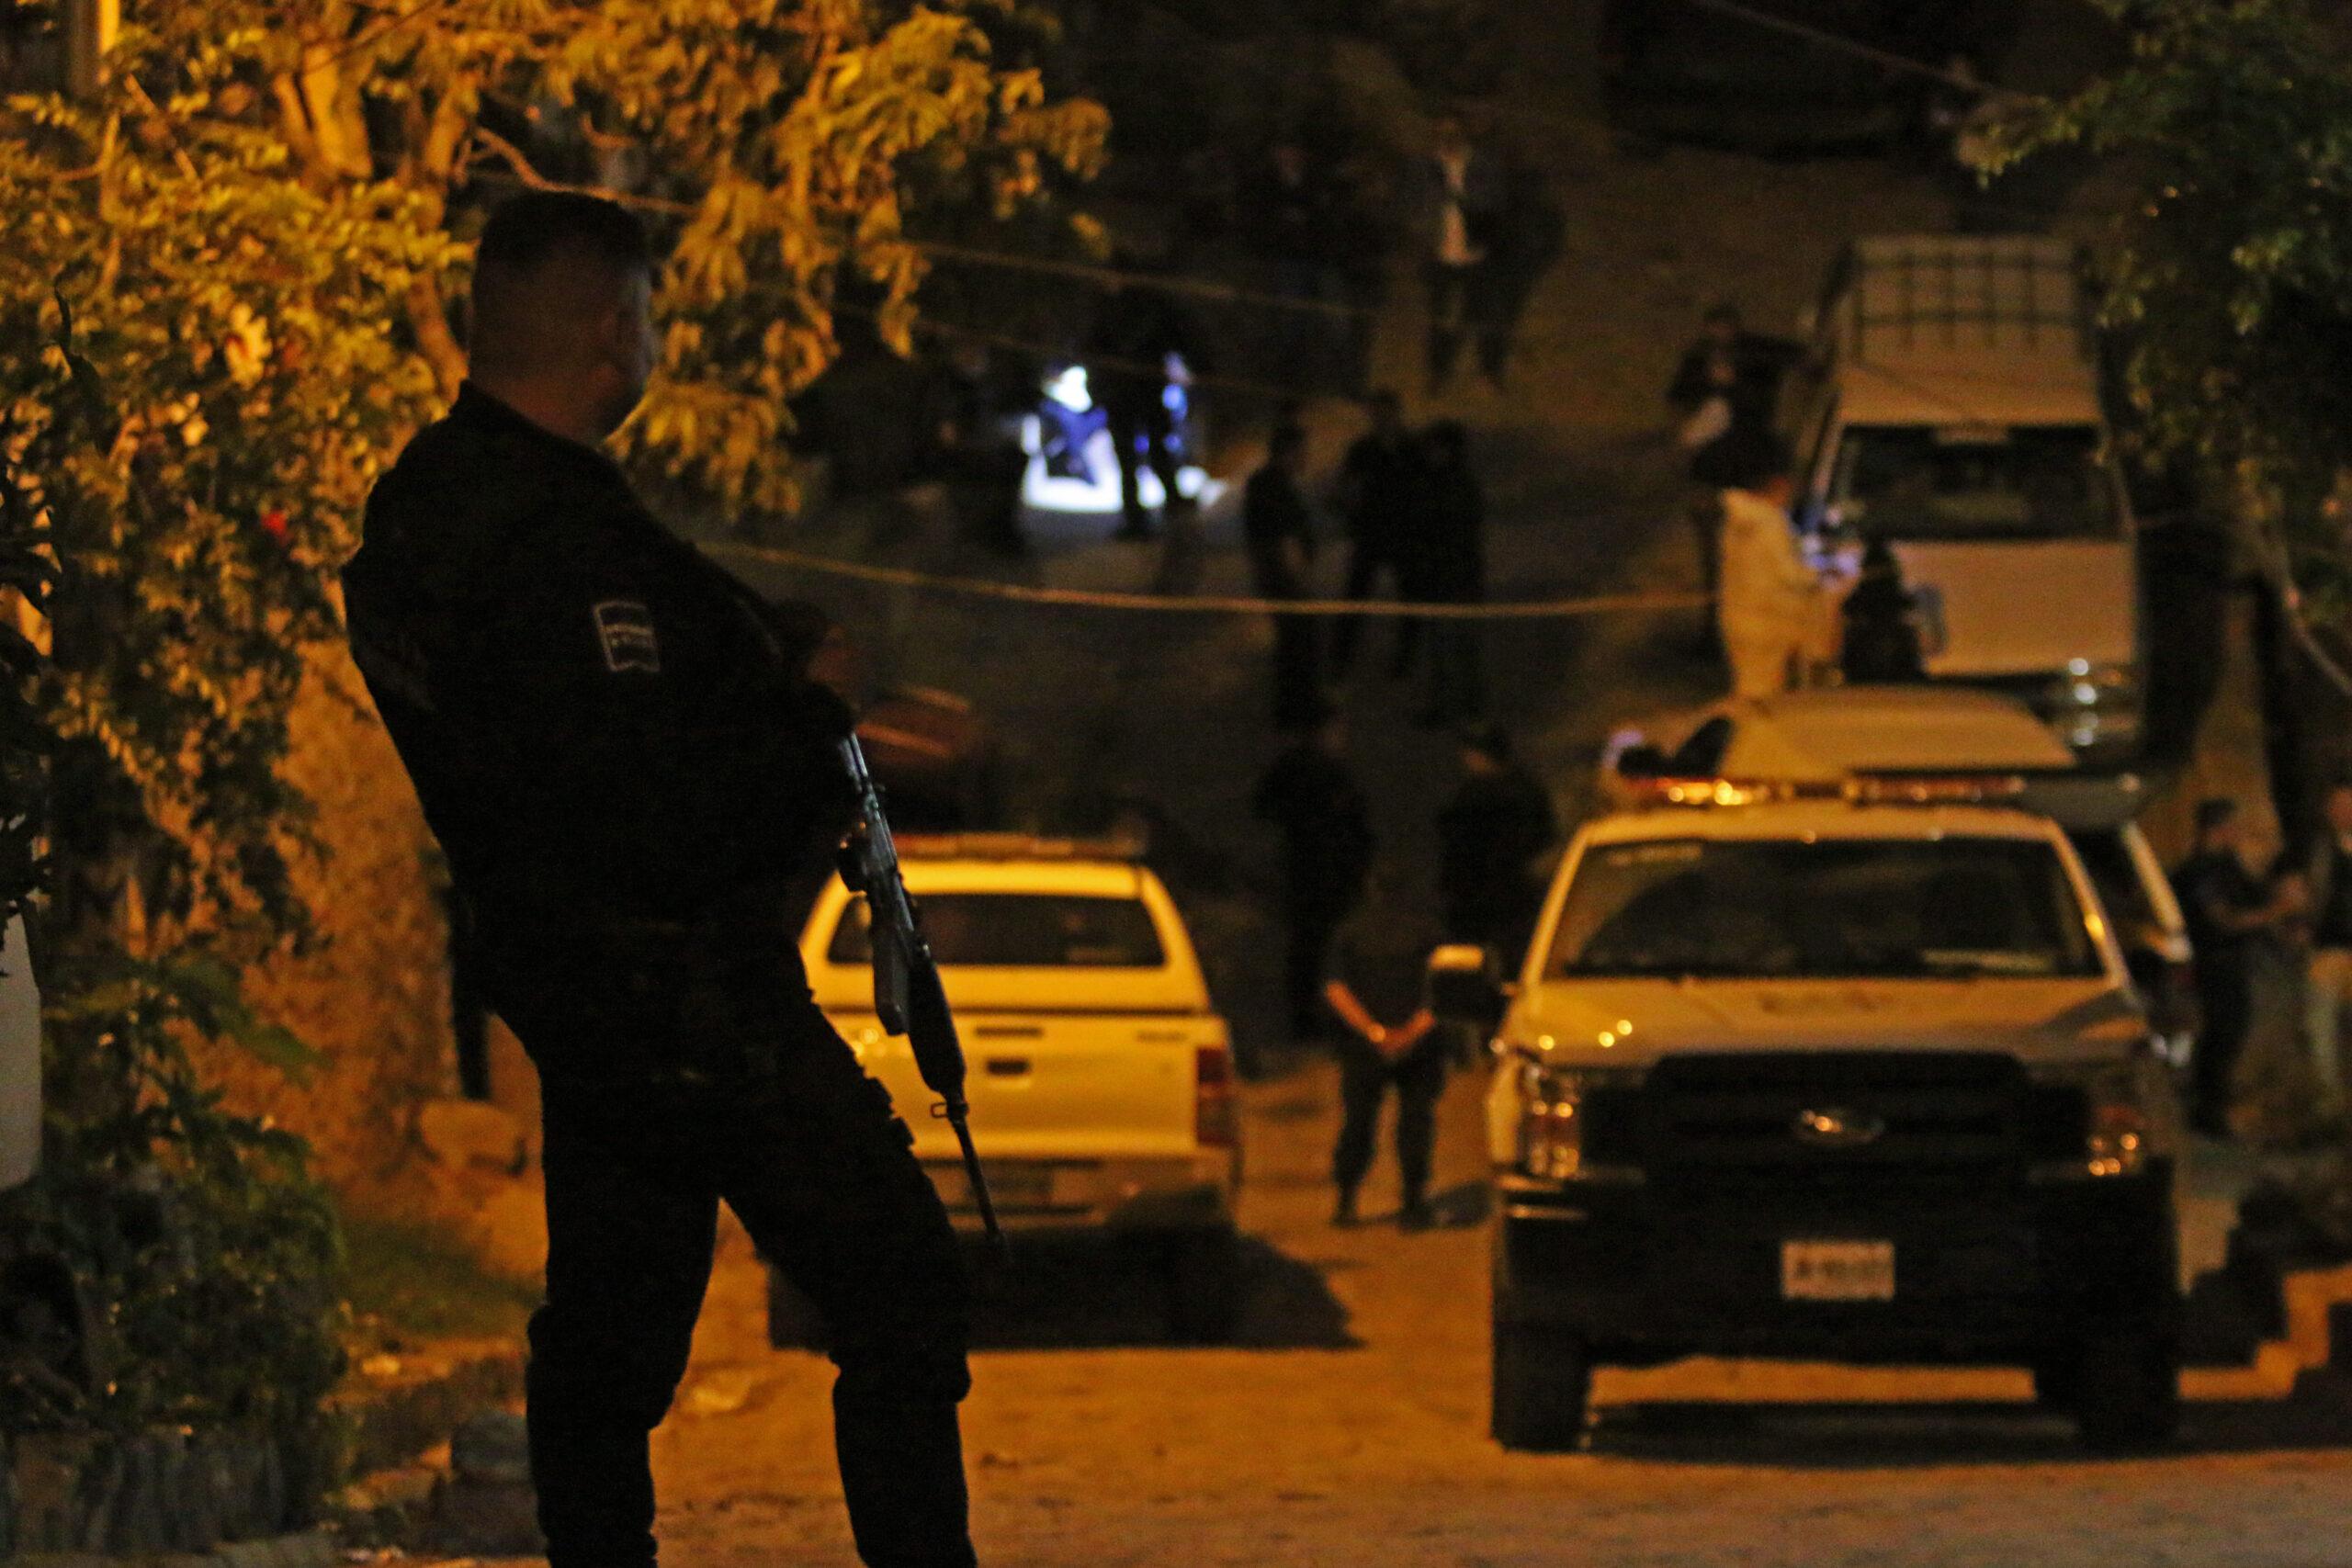 Matan a tiros a siete personas durante una reunión en un domicilio en Tlaquepaque